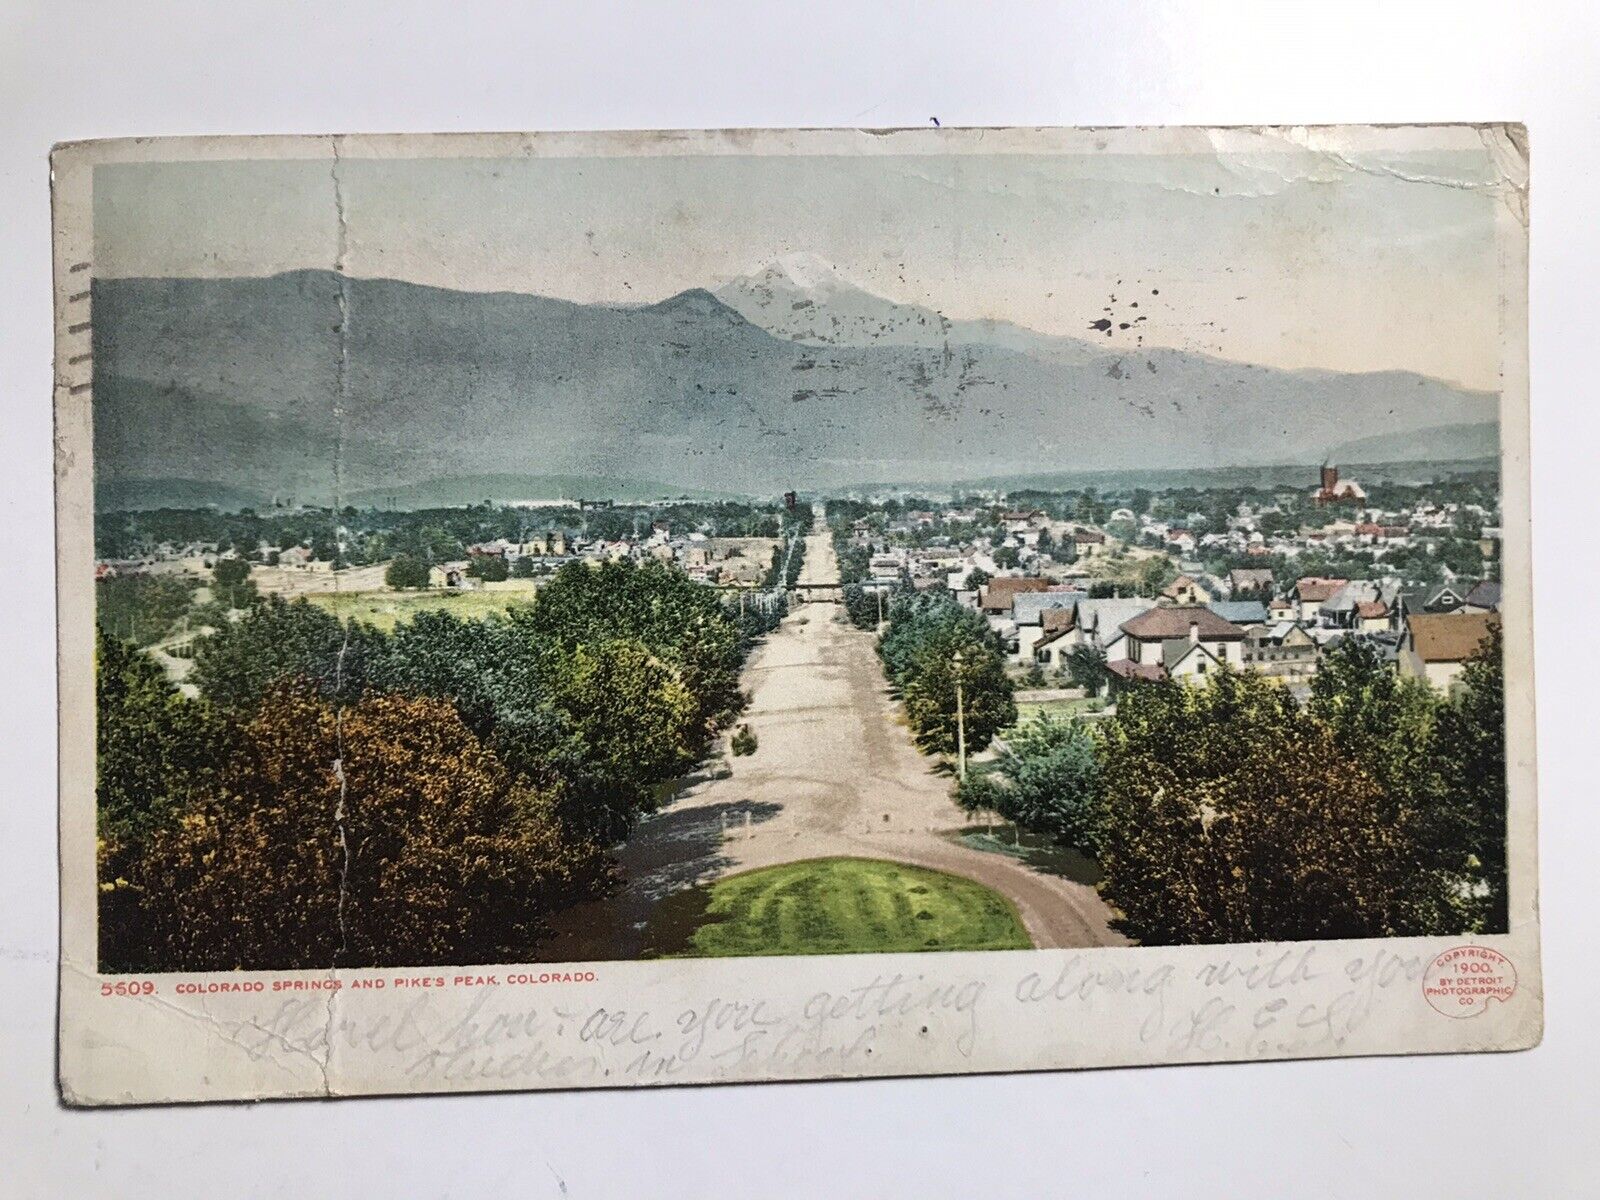 1907 Colorado Springs And Pike’s Peak Colorado Postcard